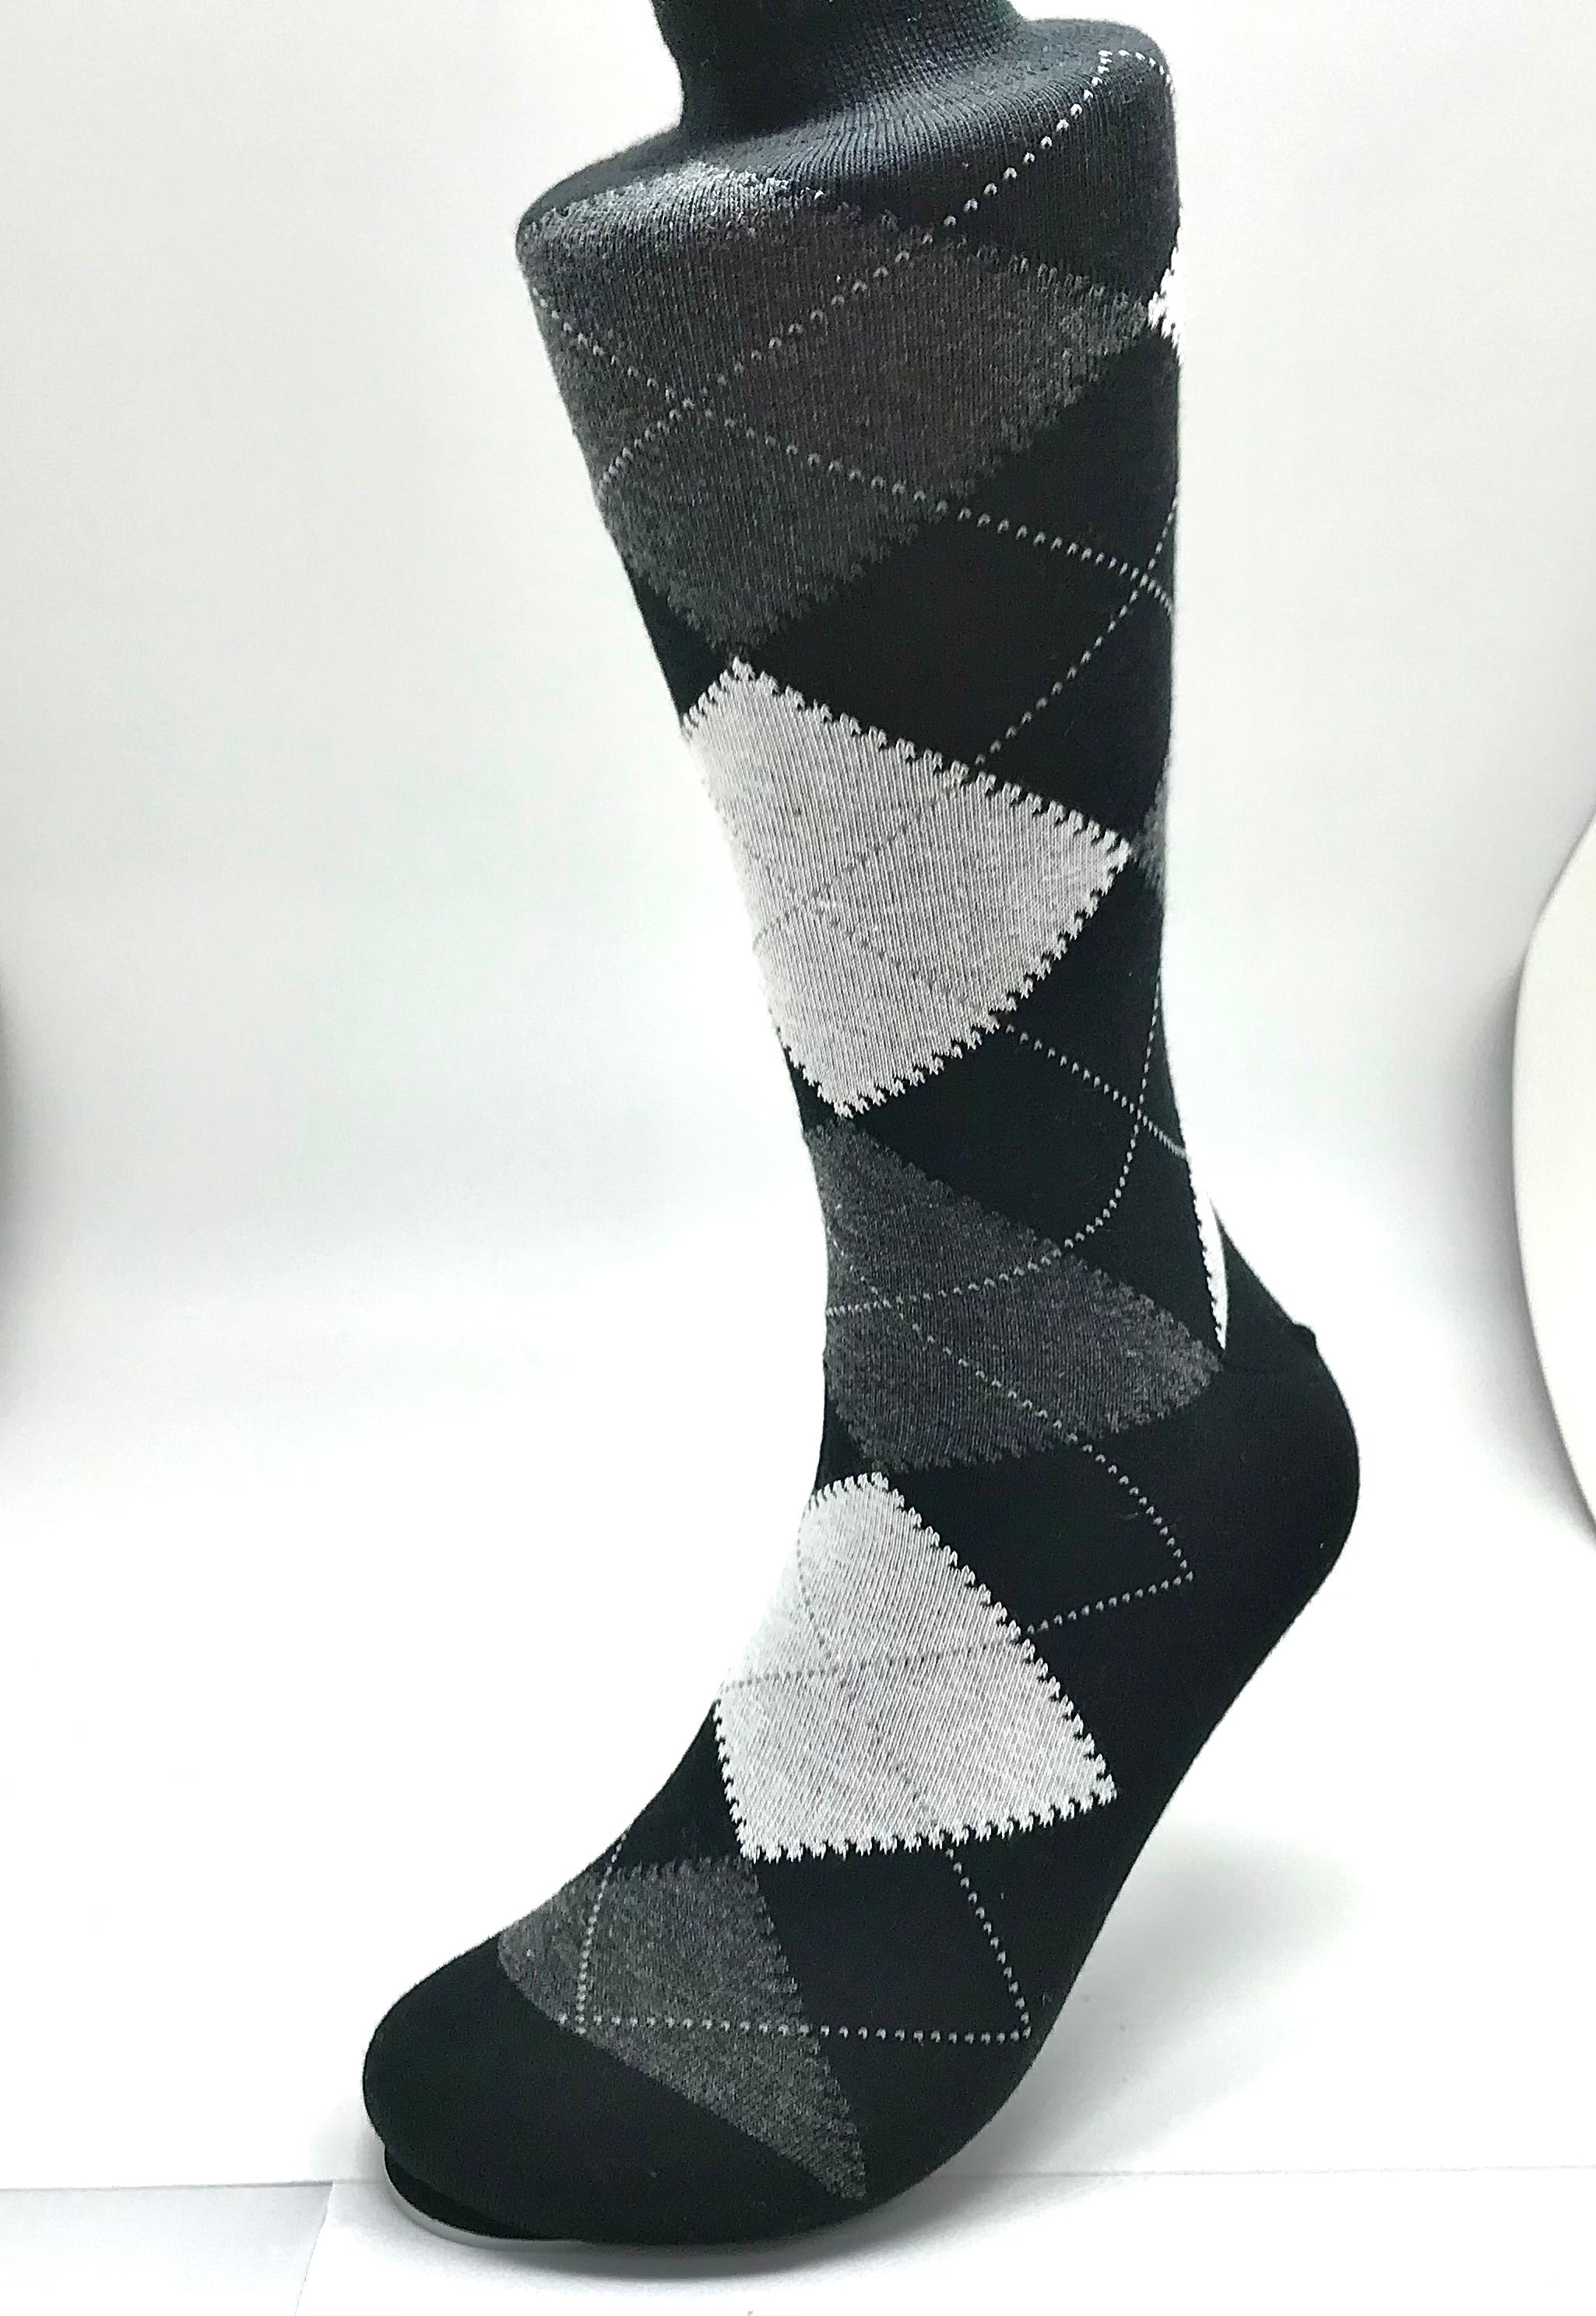 Black & White Argyle Sock